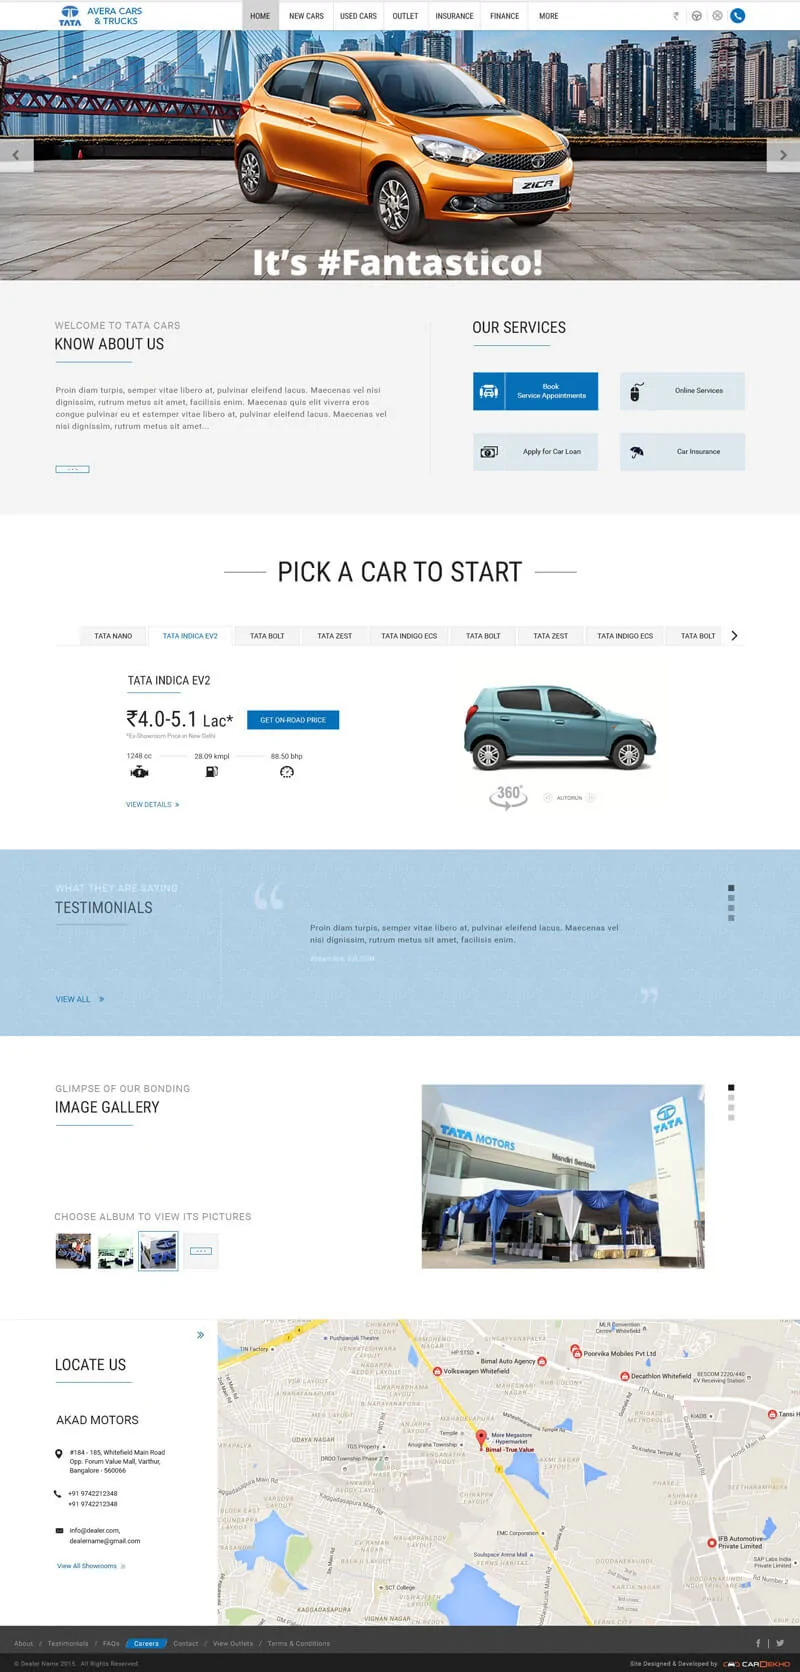 Car Dealer Home Page Sample2